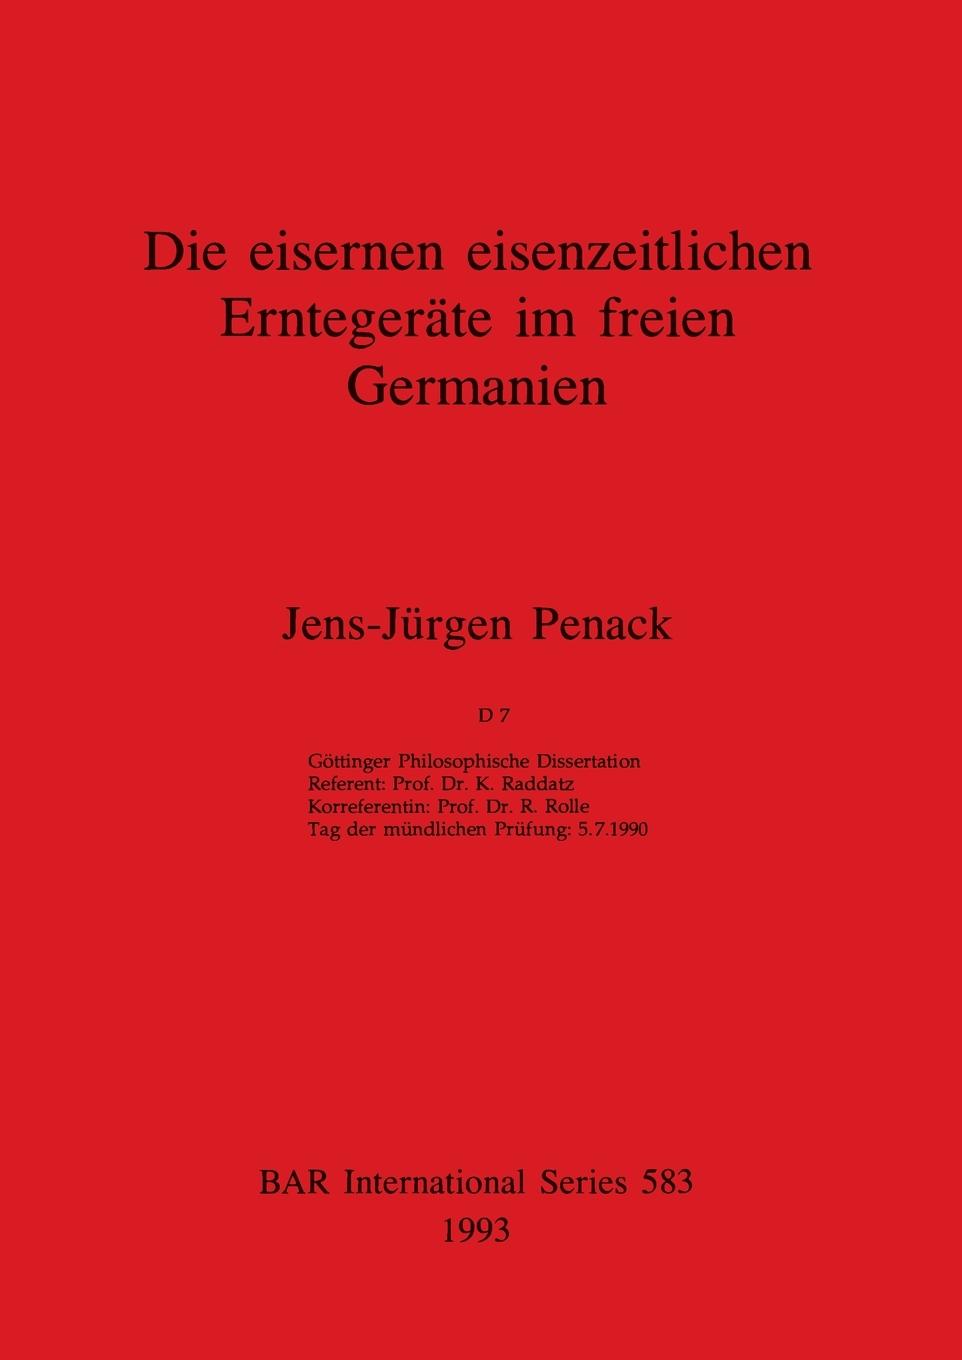 Книга eisernen eisenzeitlichen Erntgerate im freien Germanien 